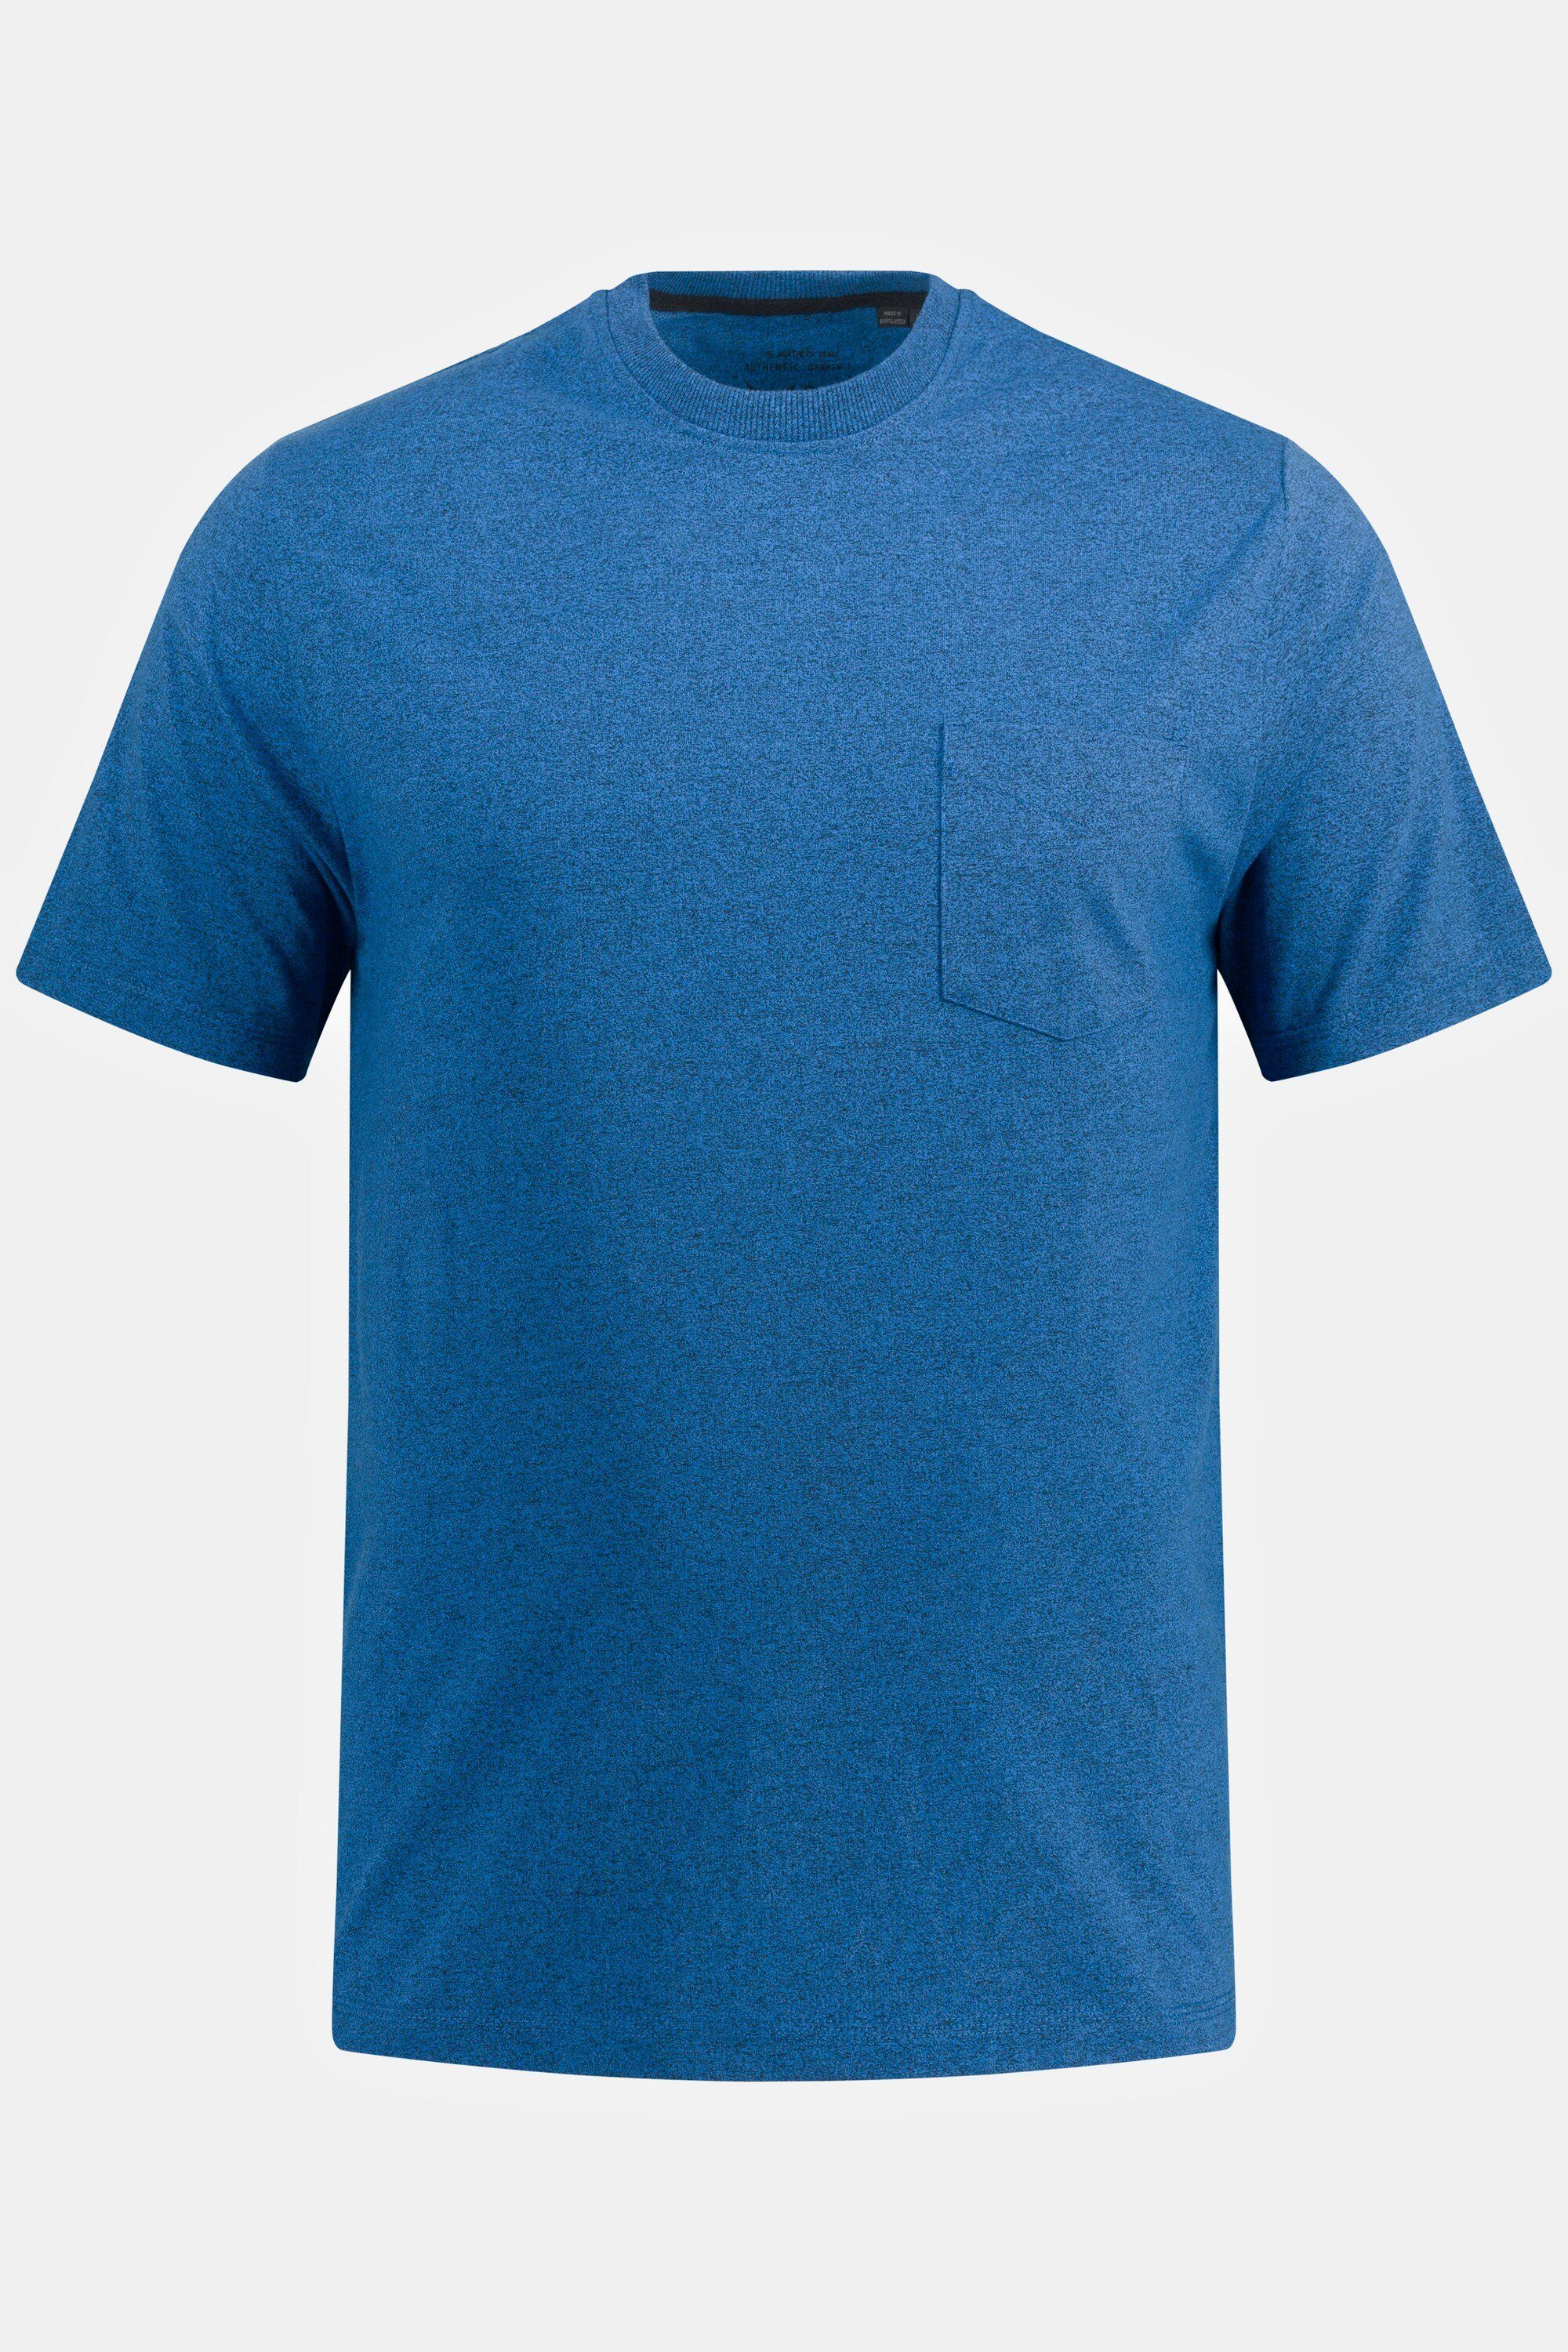 Halbarm Brusttasche JP1880 mittelblau T-Shirt Rundhals T-Shirt